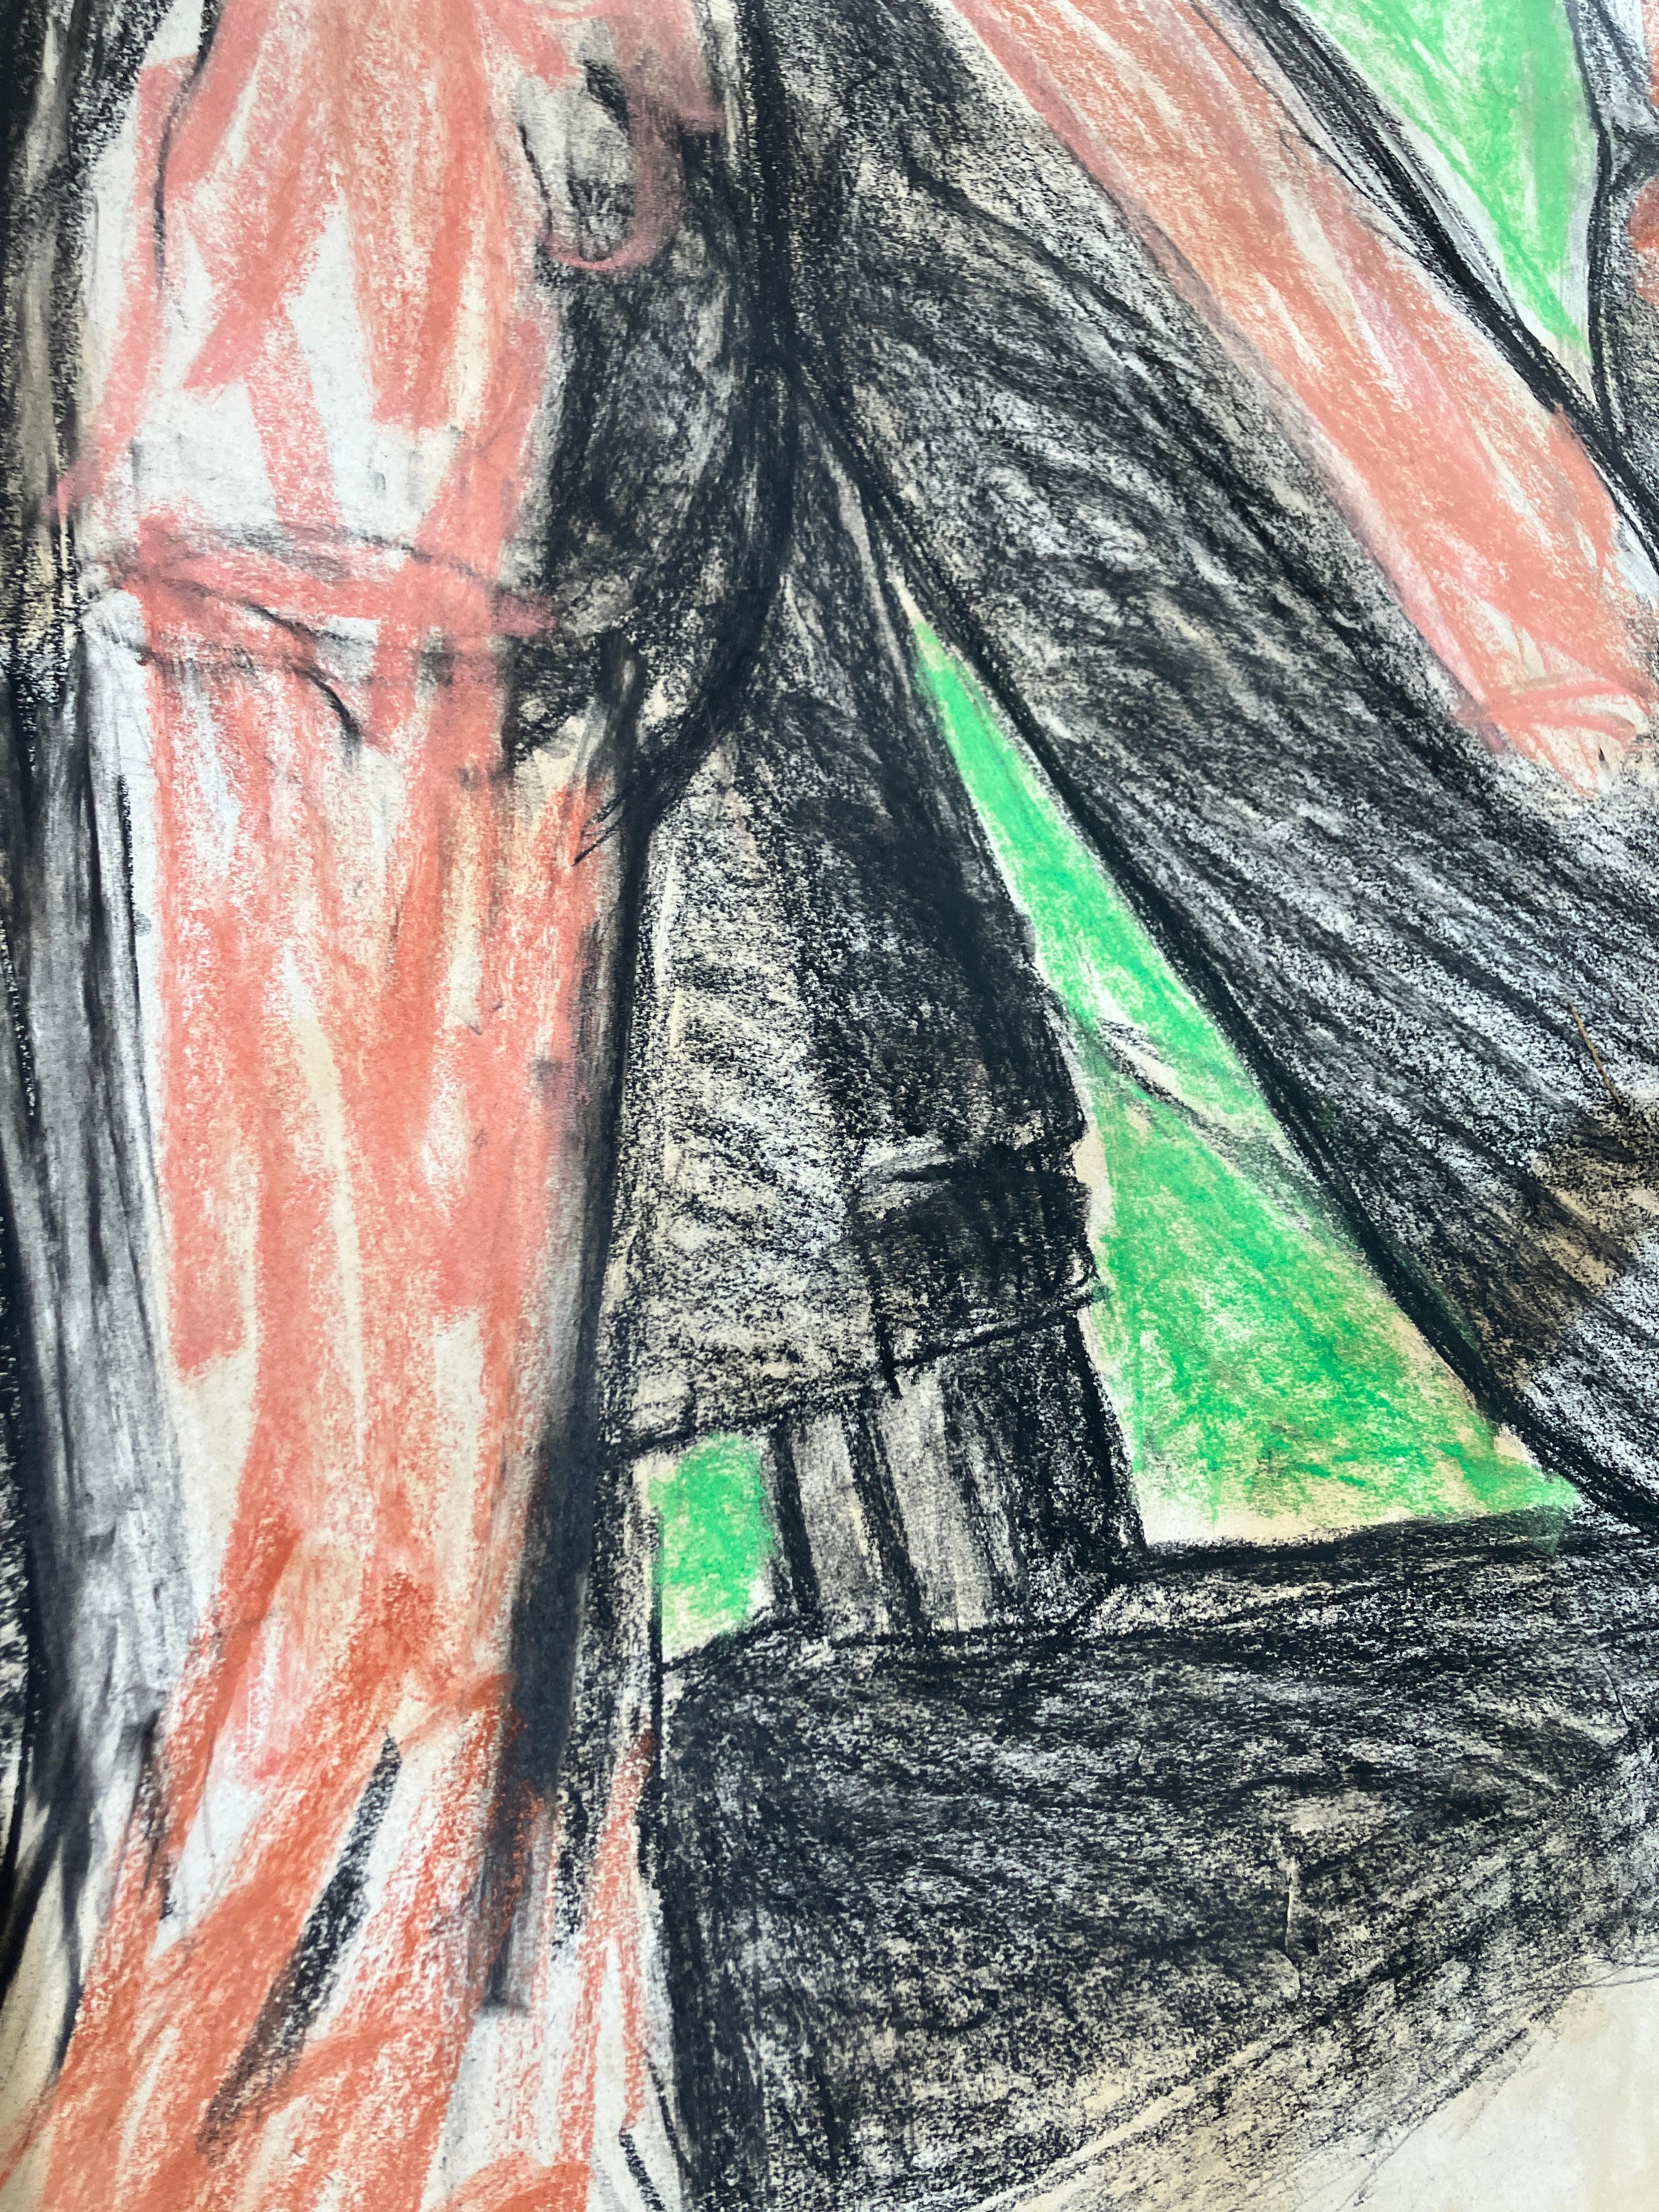 Poncho viernes 27 de mayo 2016,  par Celso Castro
Crayon Pastel sur papier d'archivage
Taille de l'image : 59 H in. x 39 in. W 
Non encadré
____________
Indéfinies par le médium, les œuvres de Celso Castro portent chacune la présence de la main de